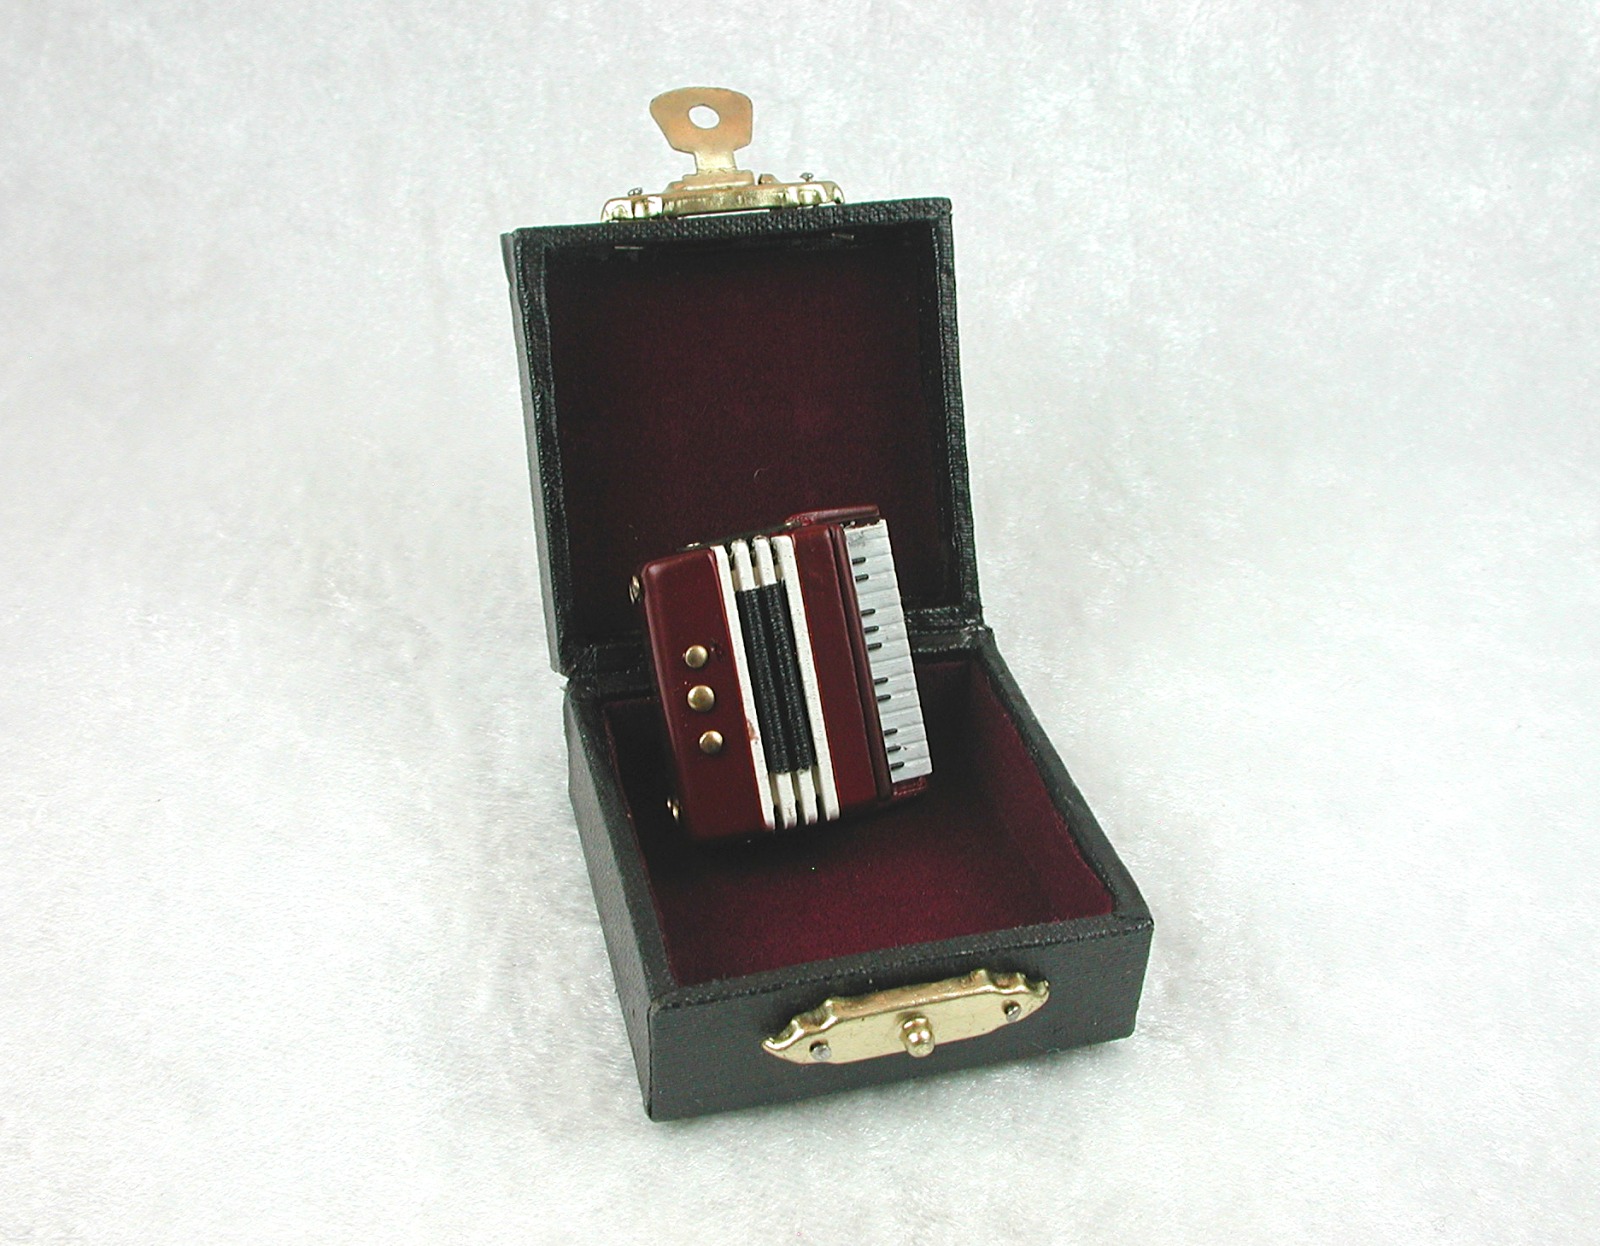 Akkordeon im Koffer in Miniatur